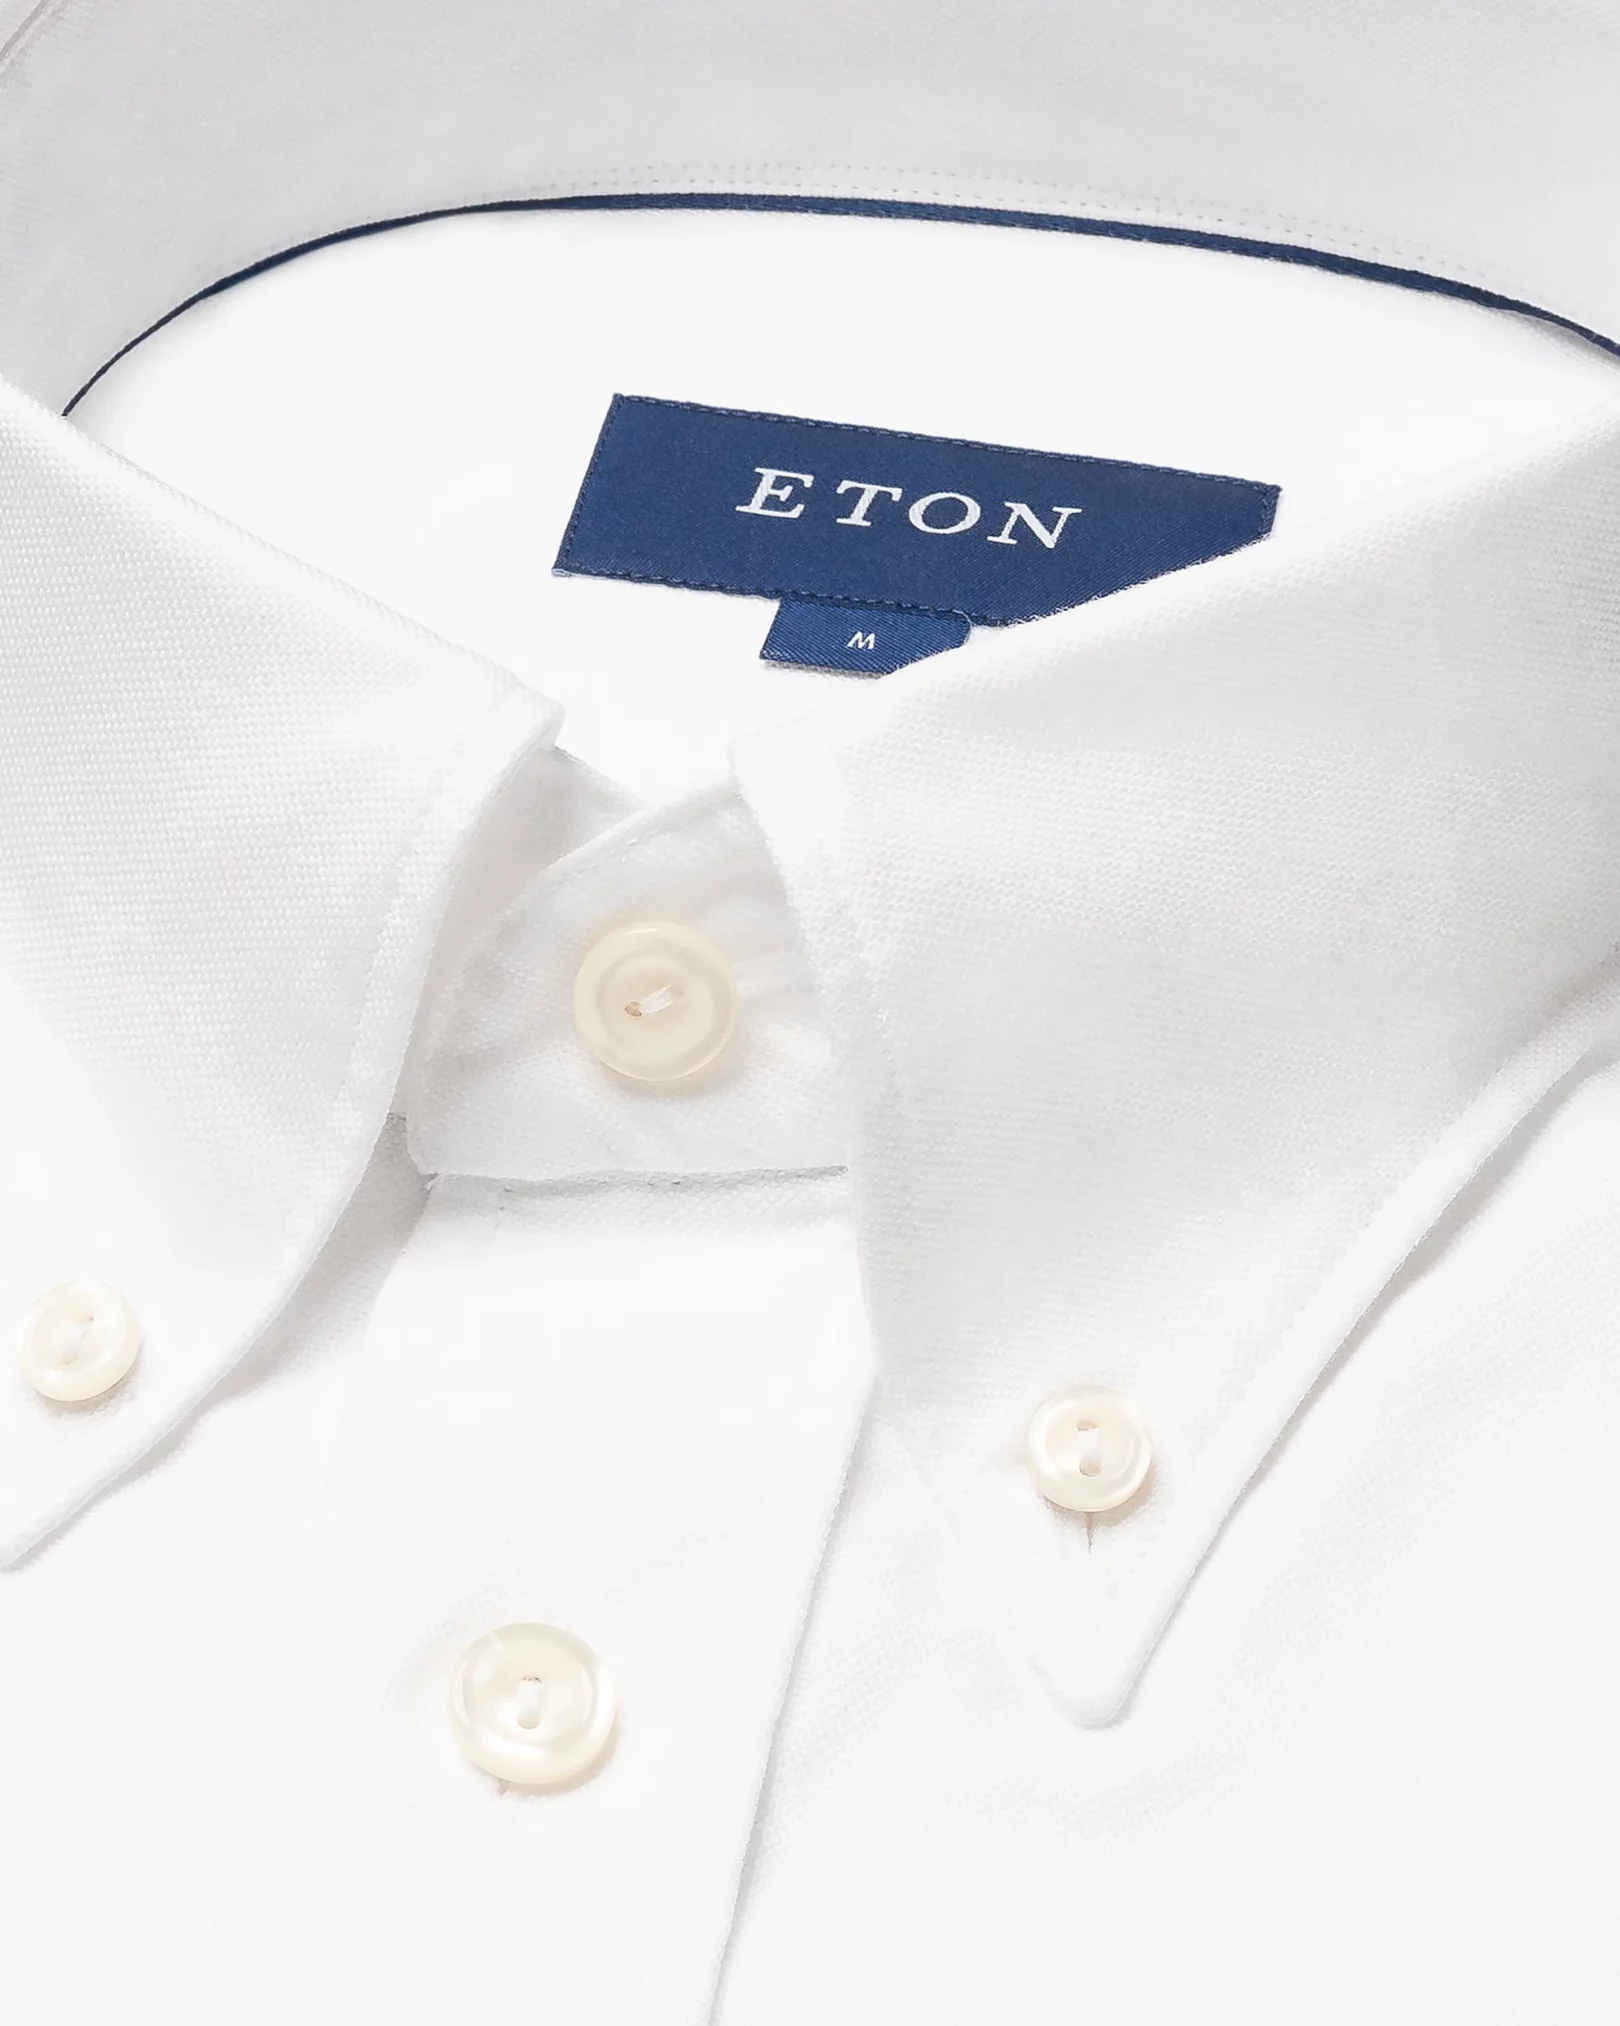 Eton - button down white oxford